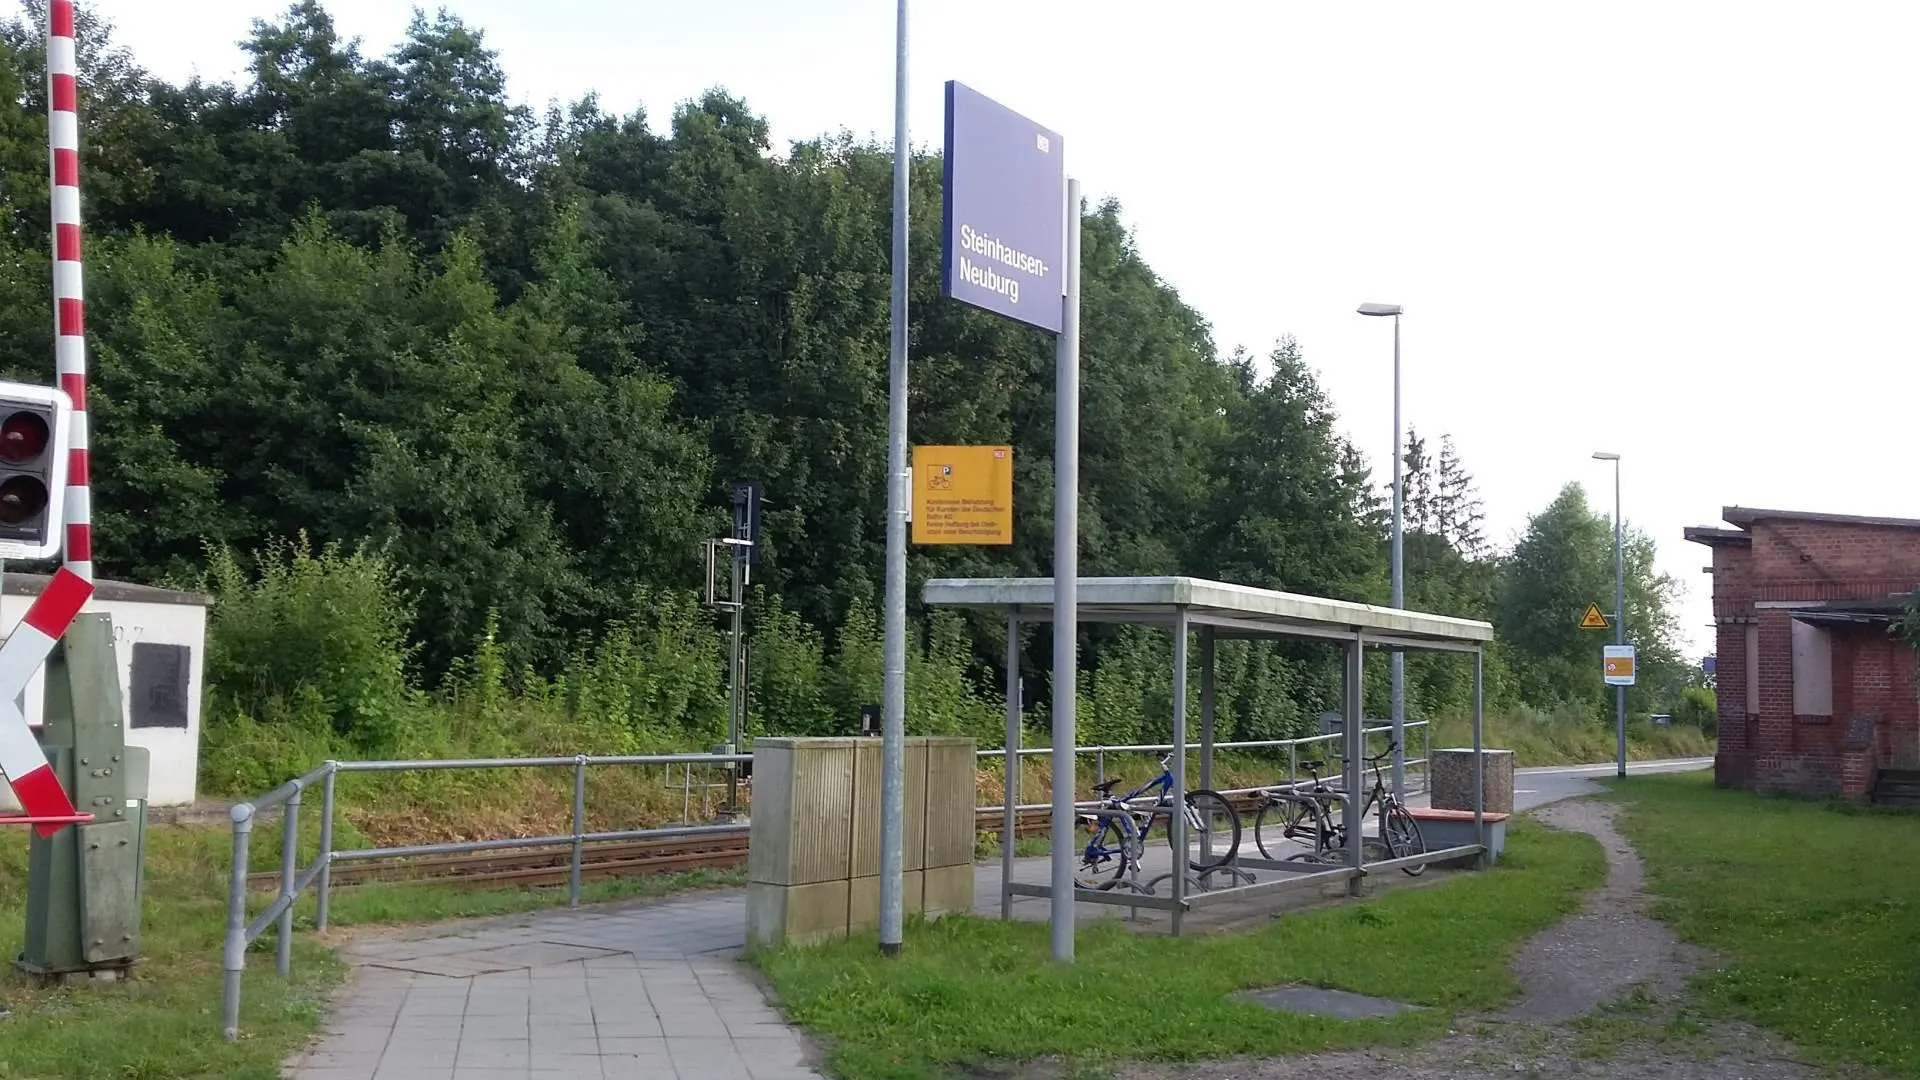 Photo showing: Steinhausen-Neuburg railway station